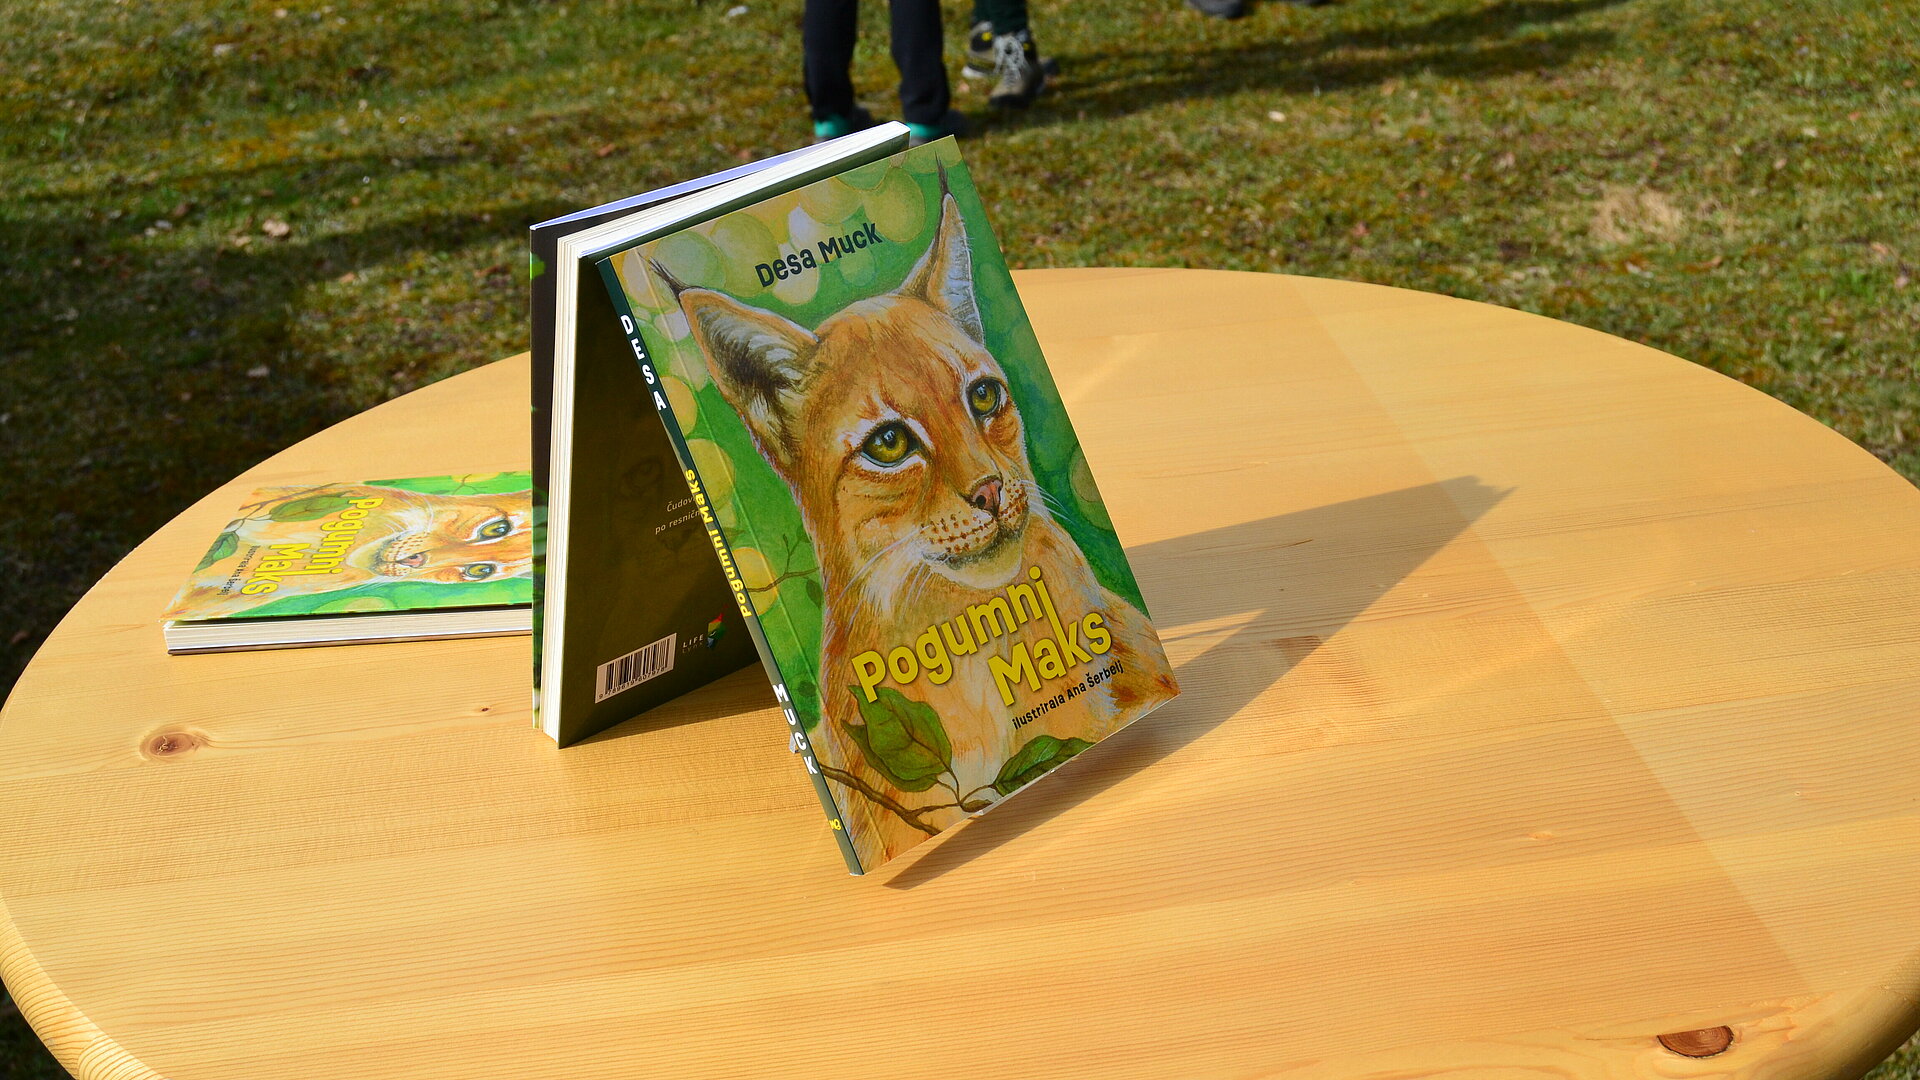 Pogumni Maks, nova knjiga o risu avtorice Dese Muck, knjiga na mizici (Foto: Vesna Petkovska, MNVP)